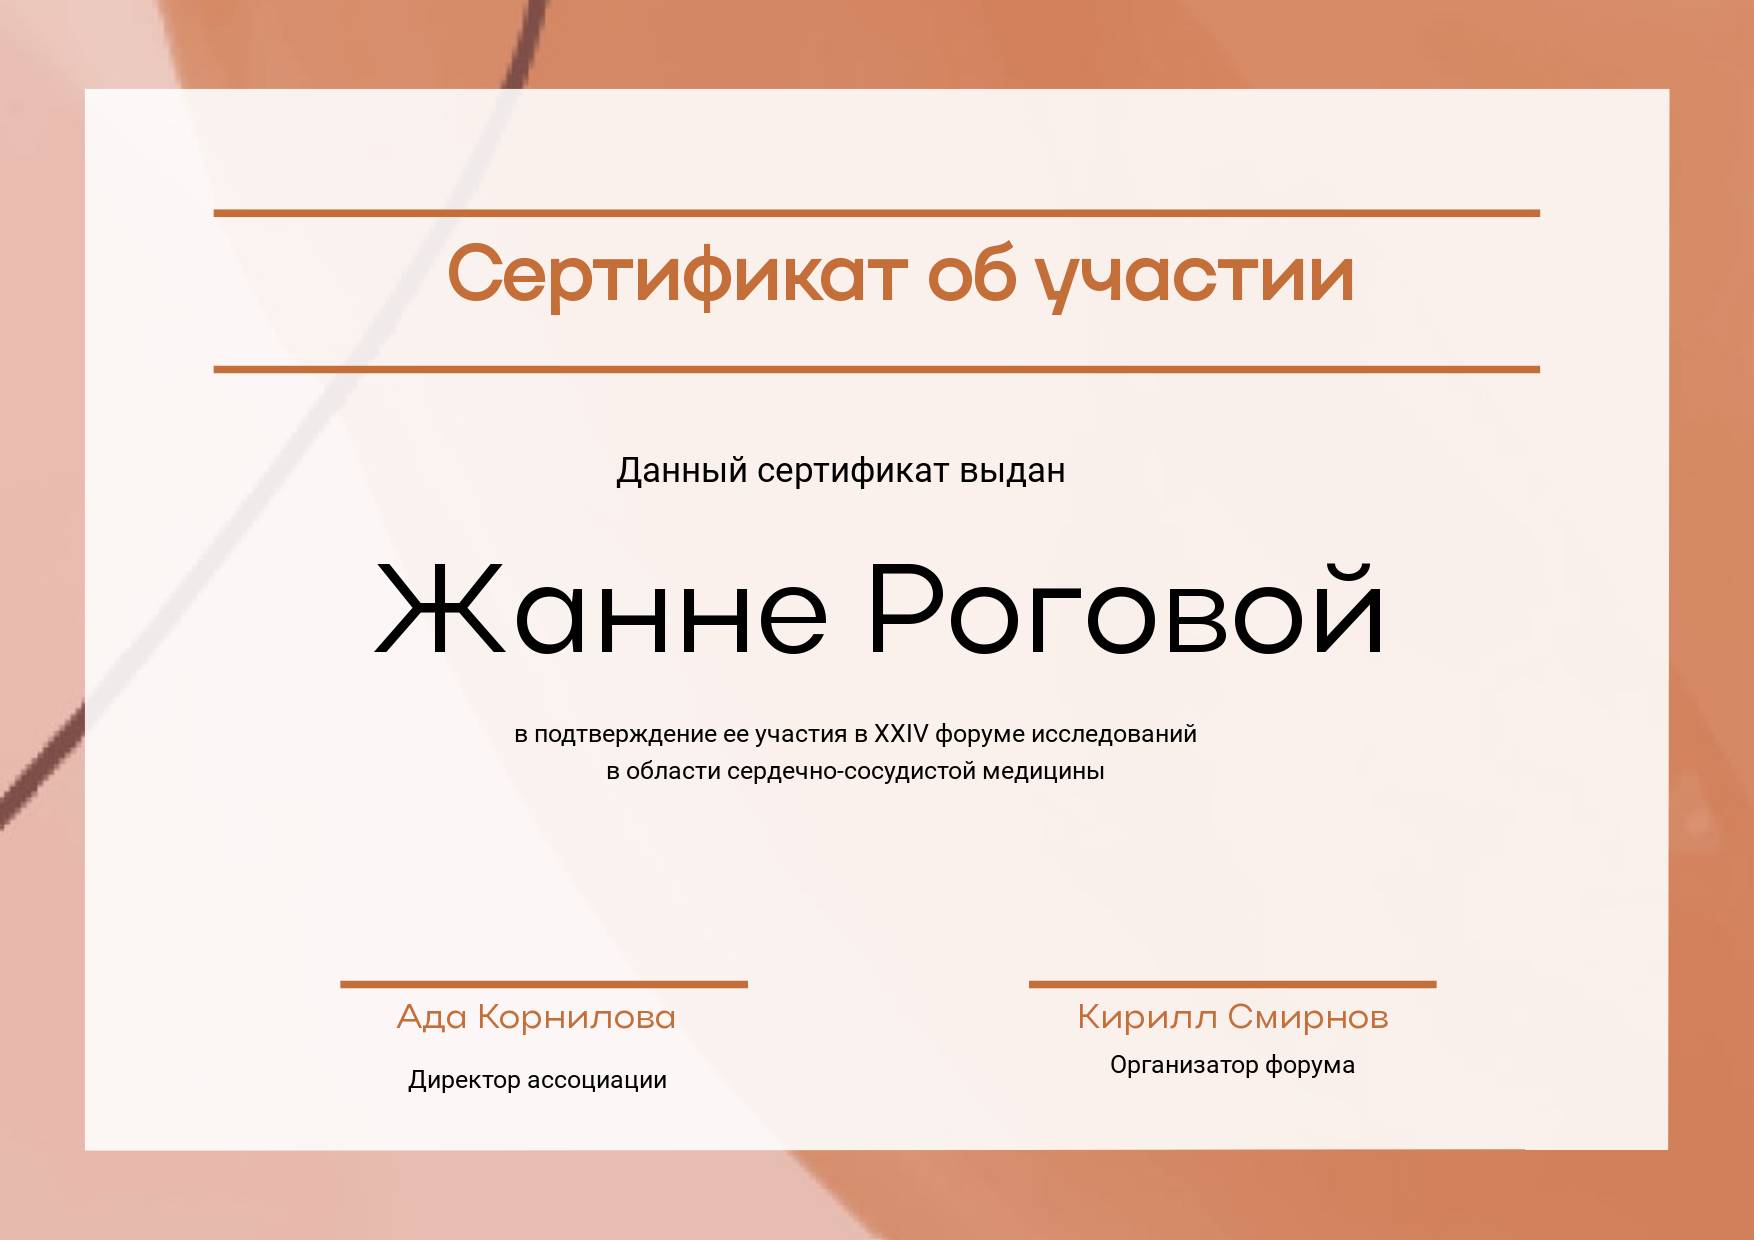 Темно-бежевый сертификат участника с полем для фио участника, текстом и местом для печати